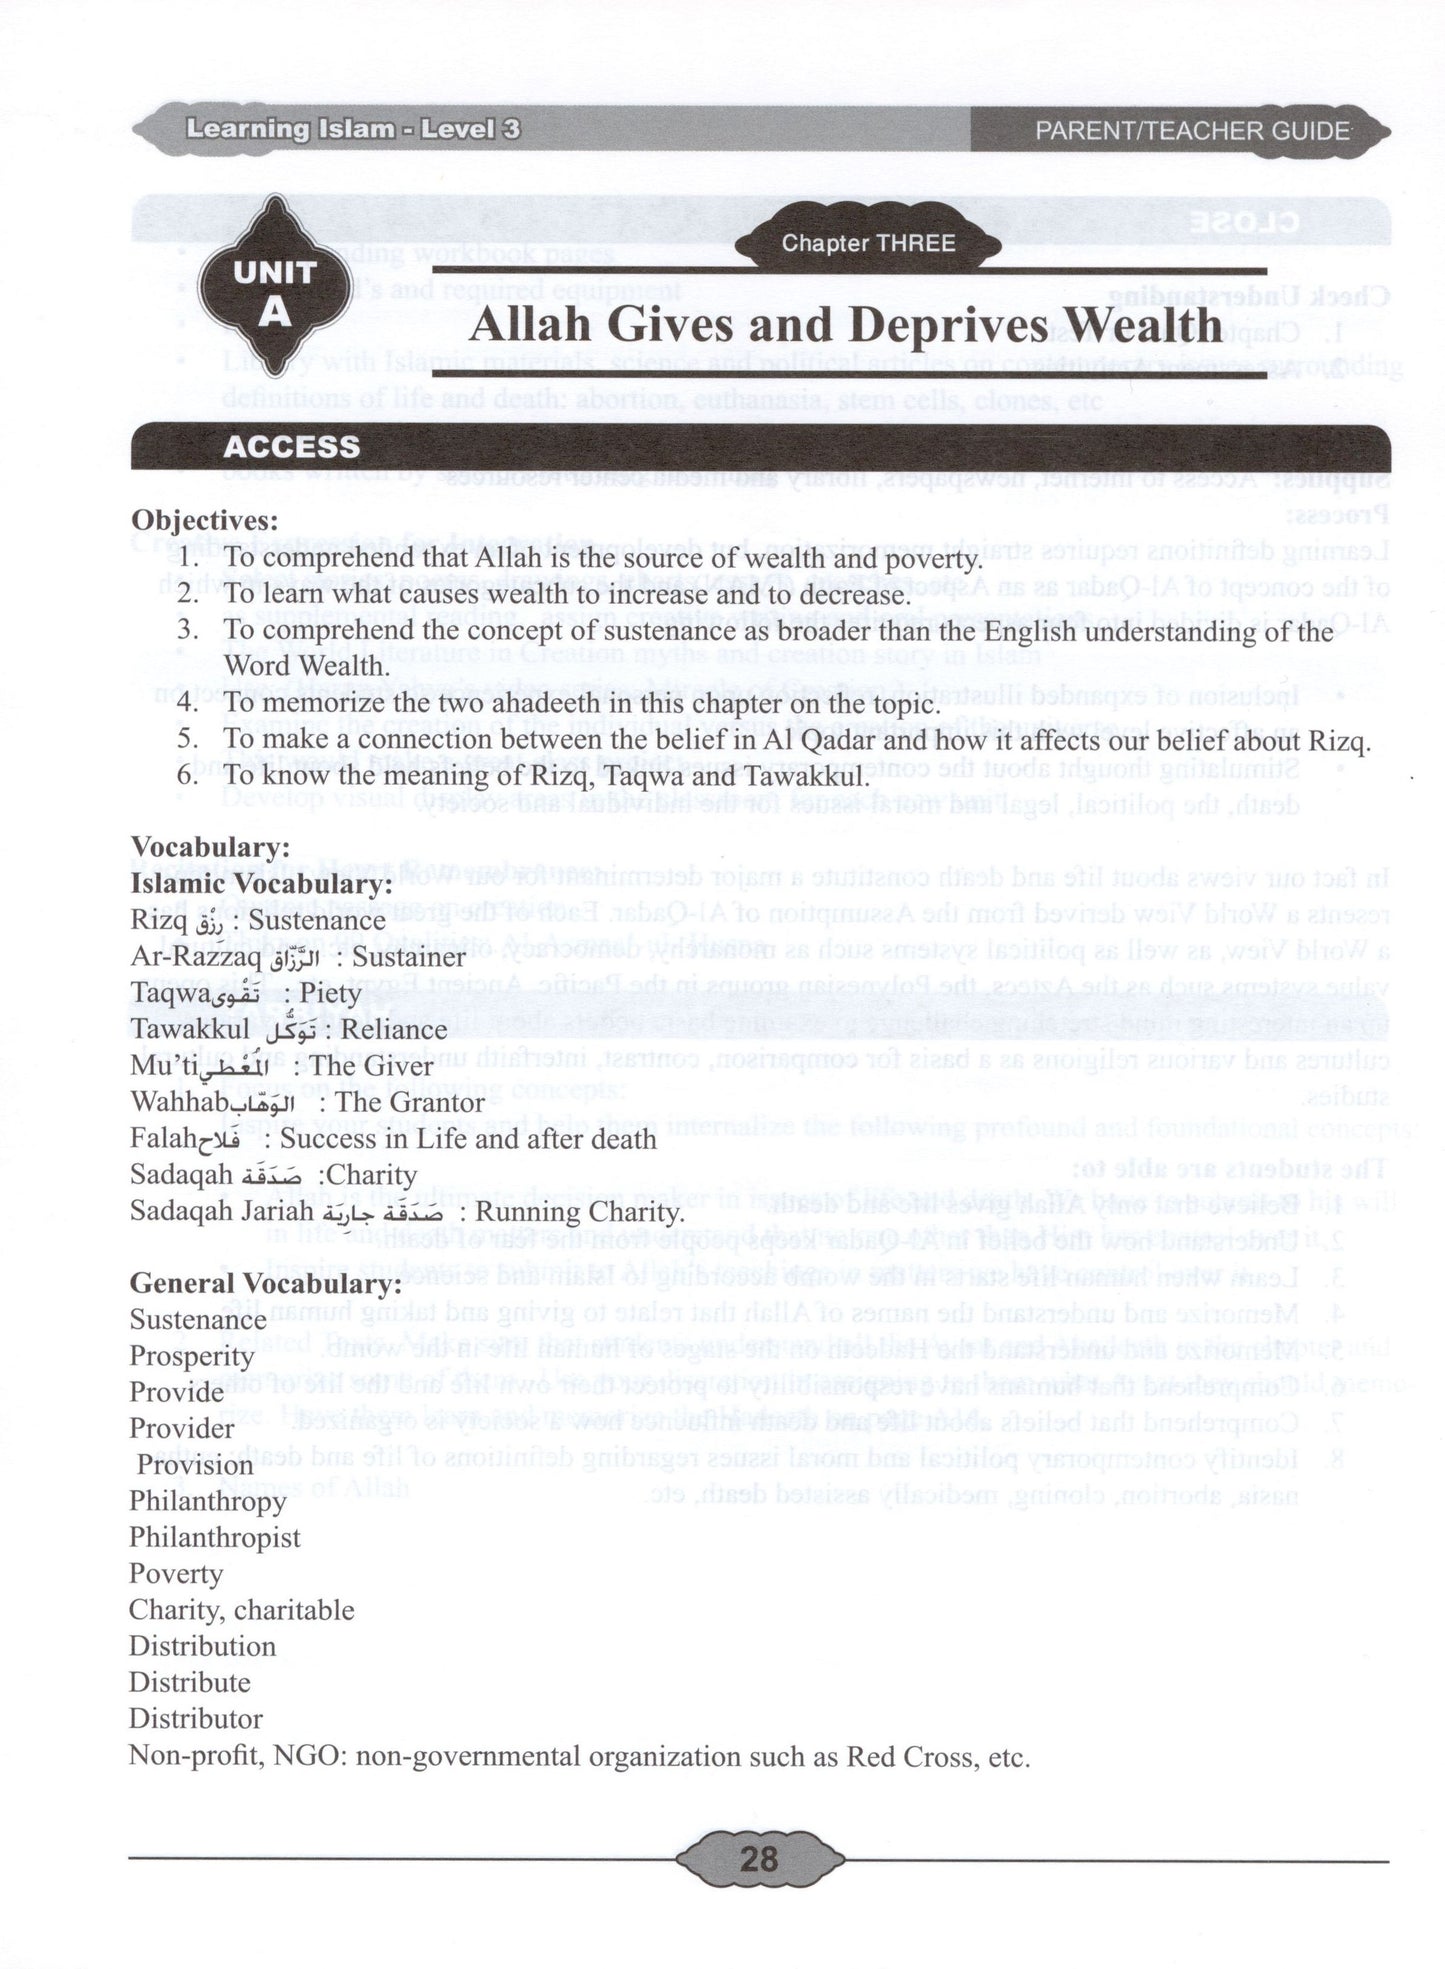 Learning Islam Parent/Teacher Guide Level 3 (Grade 8)